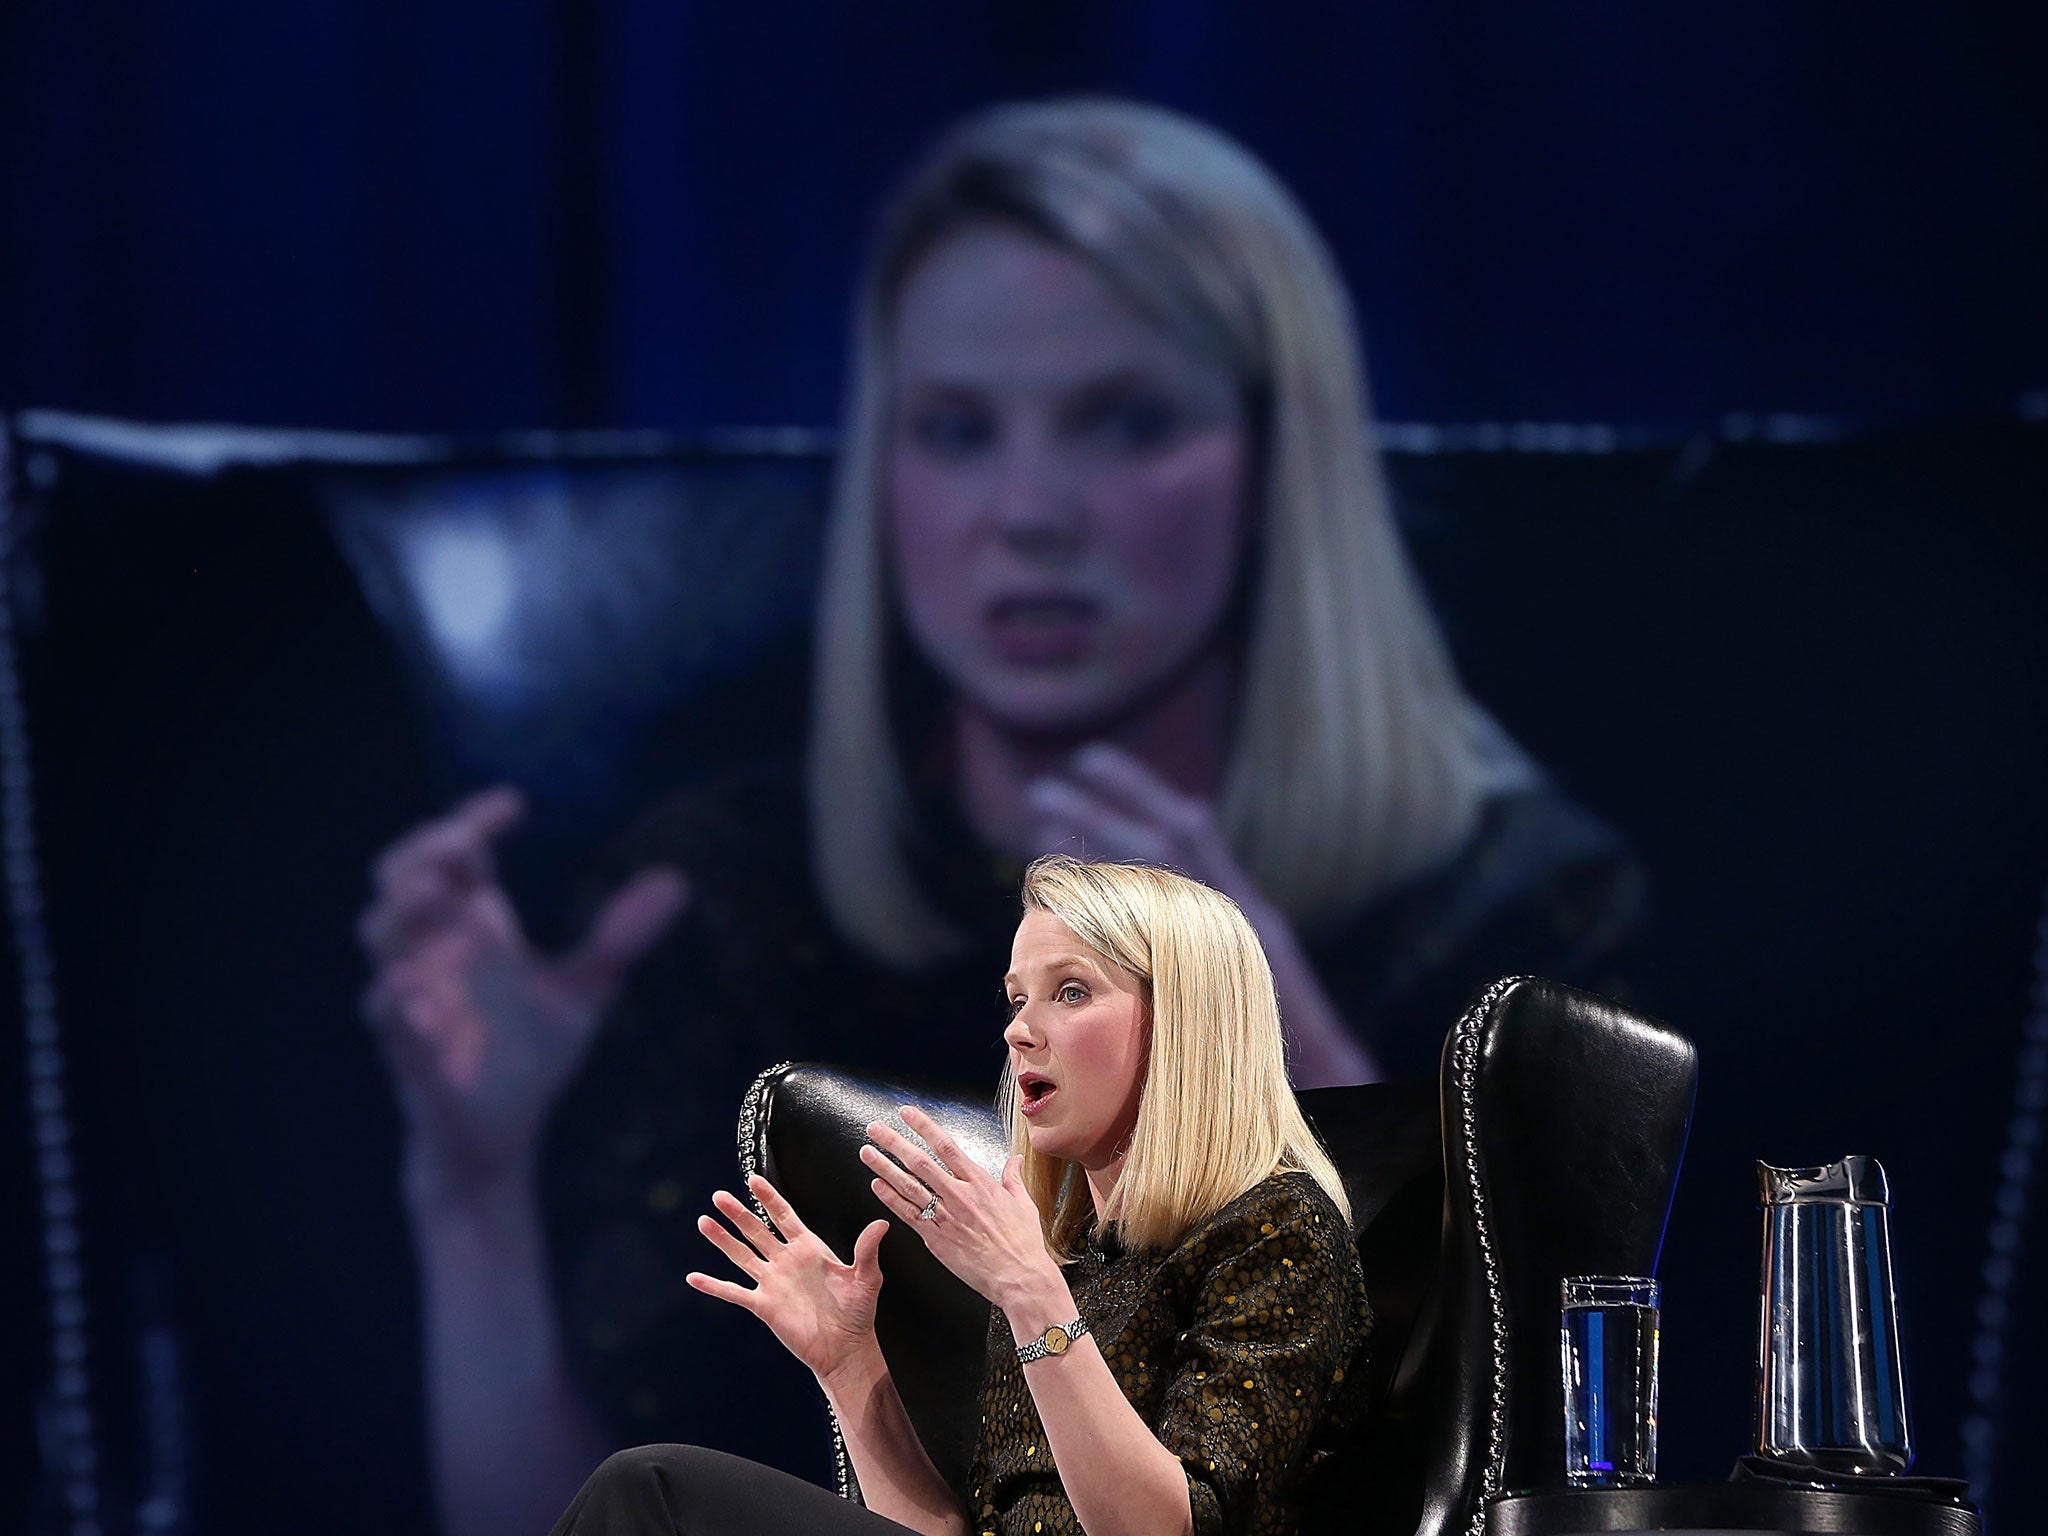 Marissa Mayer, CEO of Yahoo